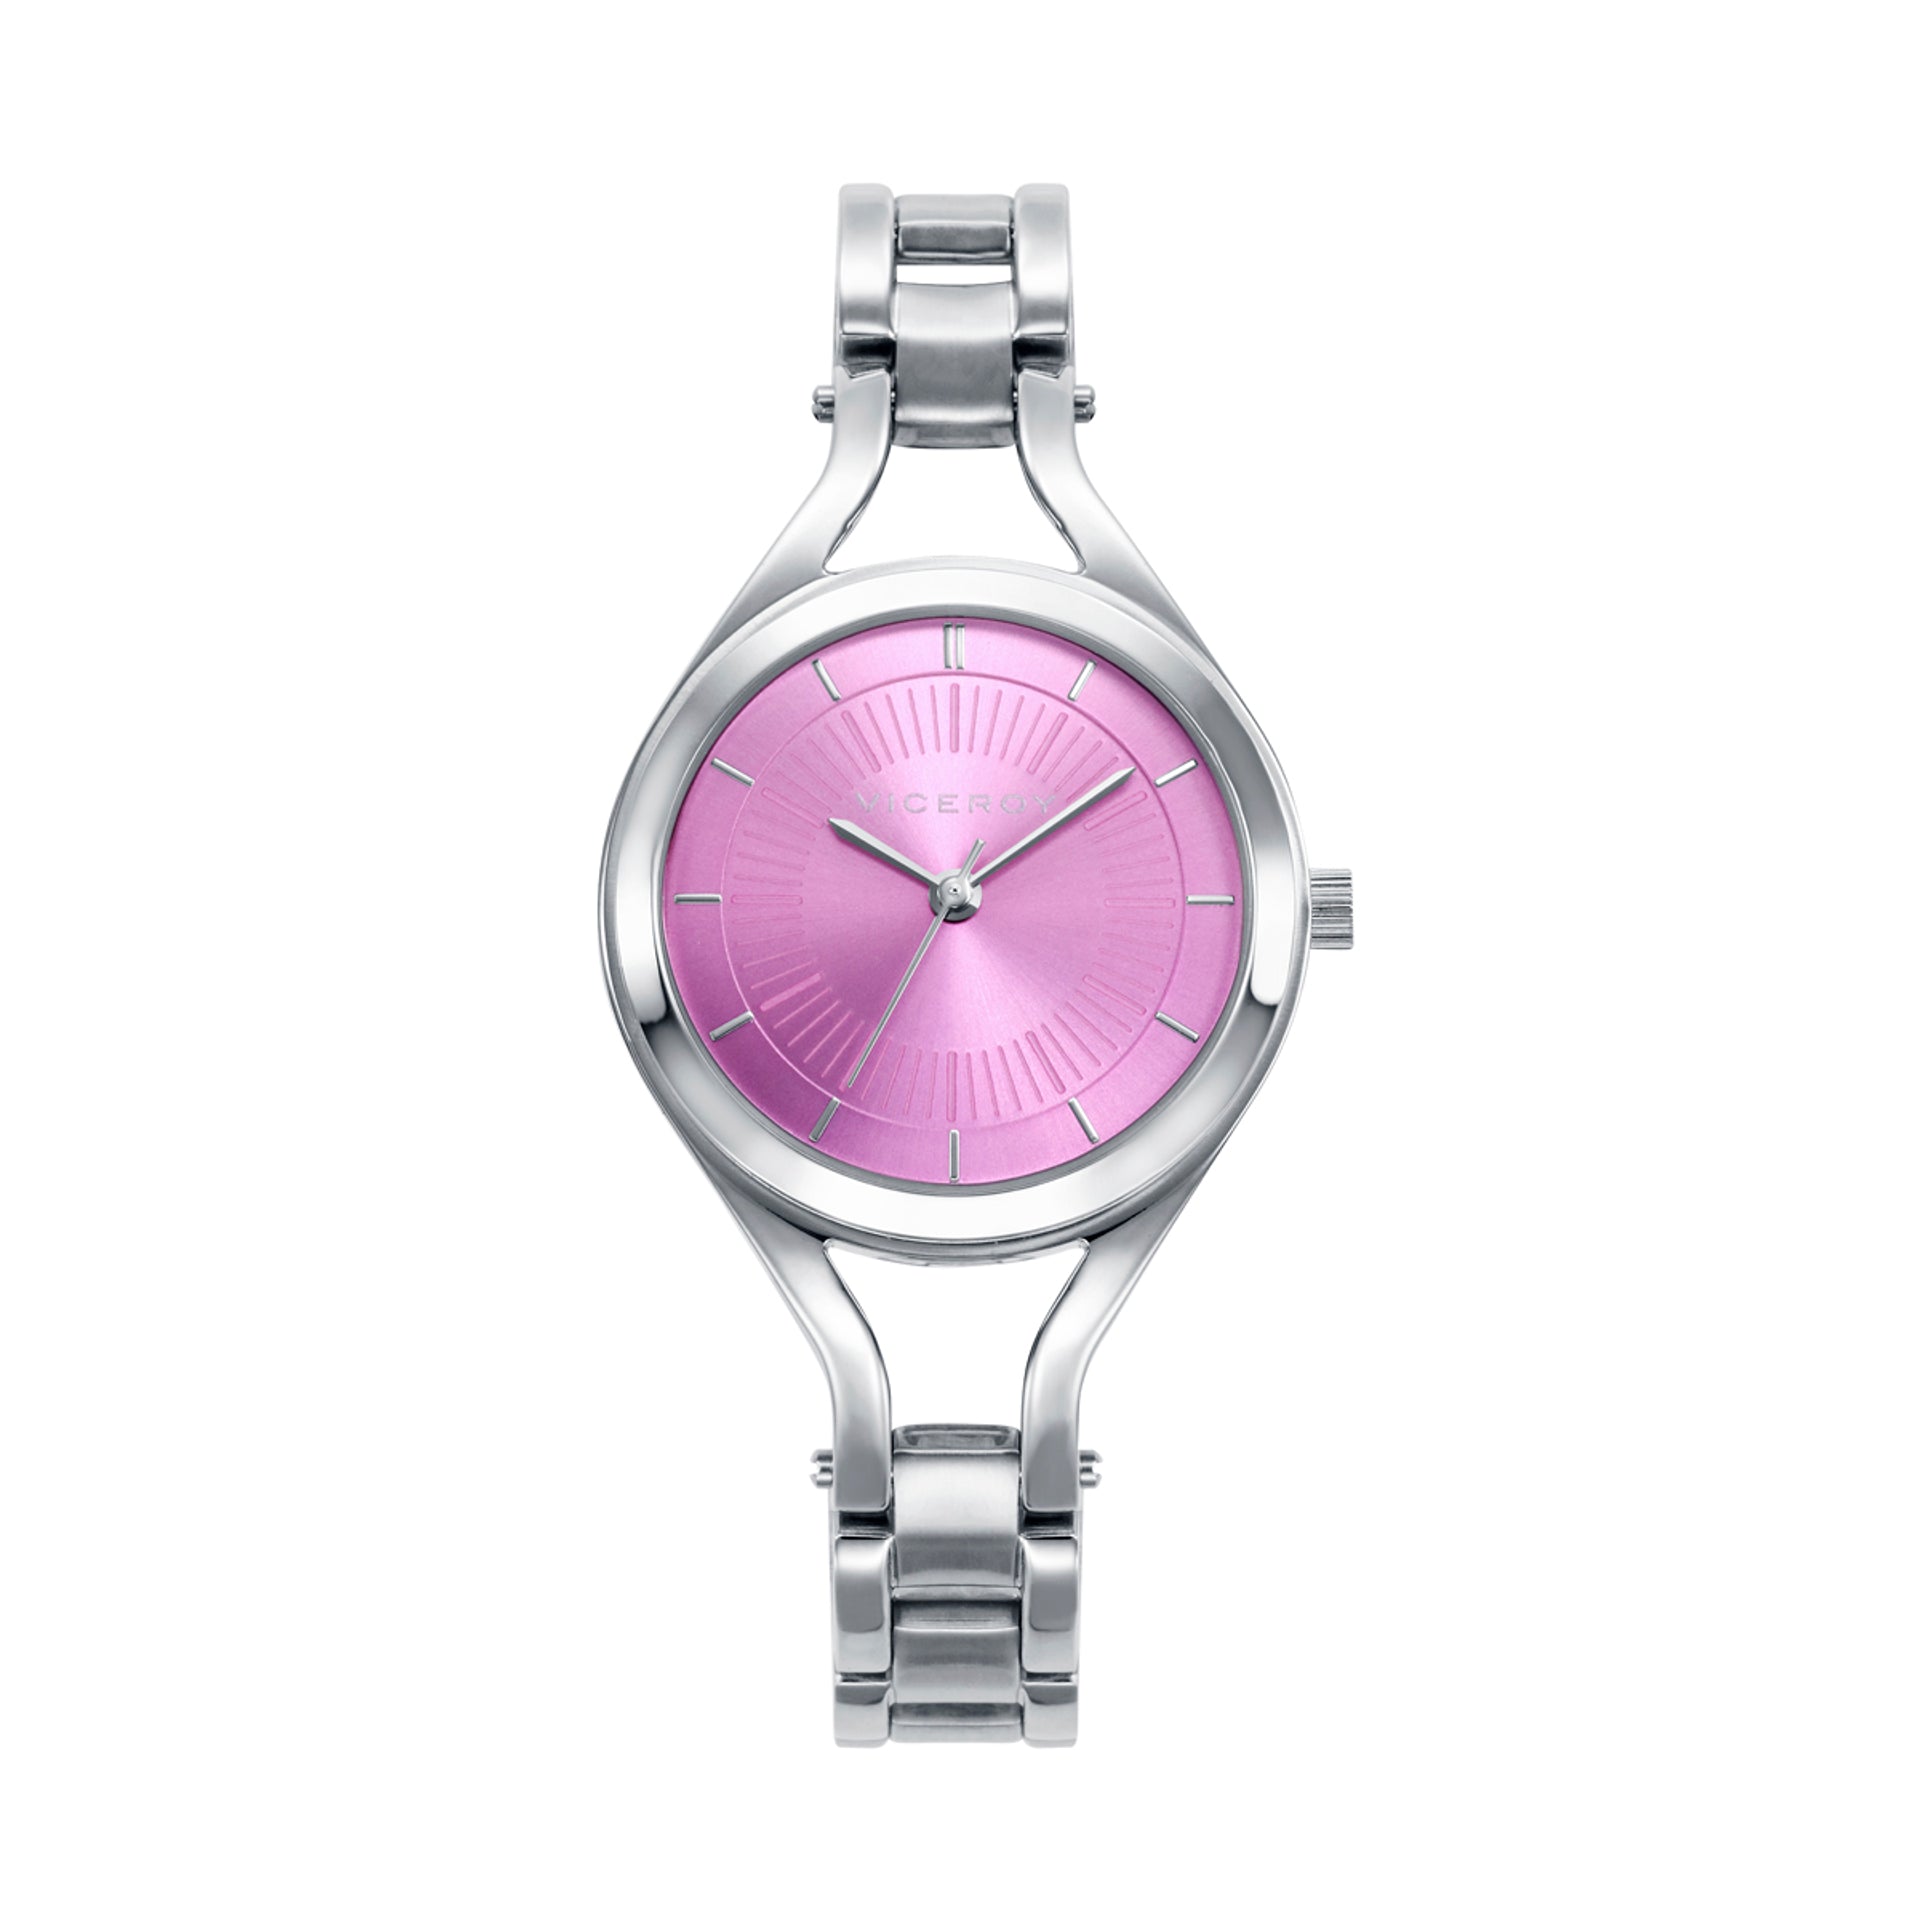 Comprar online y barato Reloj mujer Viceroy acero malla Milanesa bicolor  rosa. ref. 42288-97 sin costes de envío. - PRECIOS BARATOS. Comprar en  Tienda Online de Venta por Internet. Joyería Online